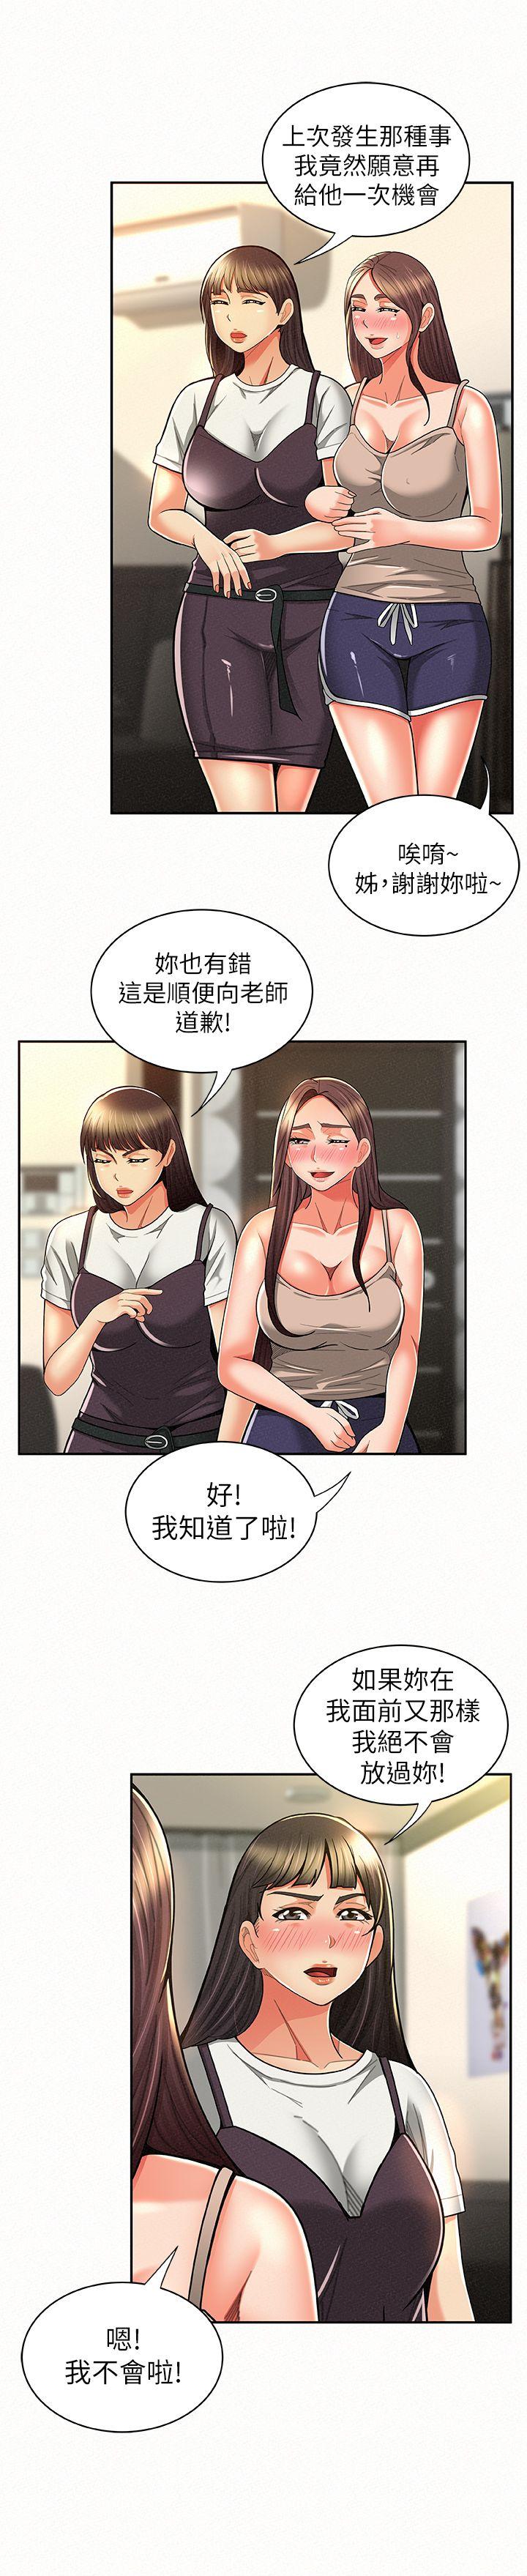 报告夫人  第10话-仁华的情色家教时间 漫画图片4.jpg